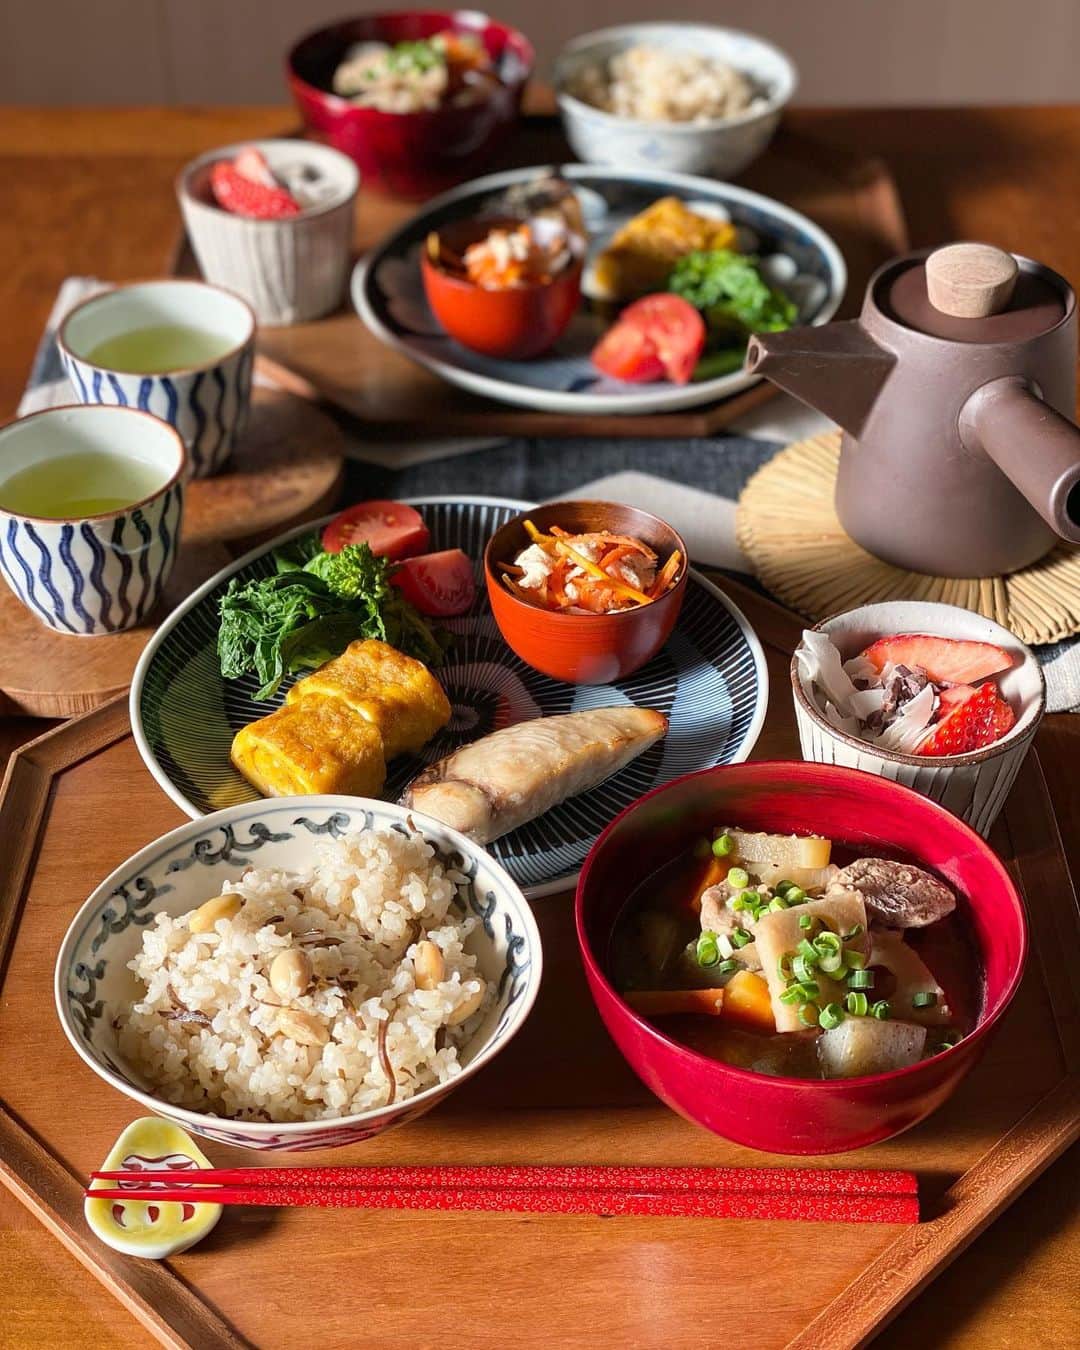 kokochiyoiのインスタグラム：「2022/01/30 先日の#朝ごはん。  (うつわの詳細なご紹介もあるので 今日は長くなりますが、 よかったらお付き合いくださーい😊)  ・半白大豆と塩昆布の炊き込みご飯 ・とん汁  ・サワラの塩麹みりん焼き ・たまご焼き ・菜の花 ・にんじんと鶏のナムル風 ・フルーツトマト  ・いちごヨーグルト ・緑茶🍵  この日の朝は、 #テーブルウェアフェスティバル @tablewarefestival  で購入した器を 一部使いました😋🍽  12年くらい通っている テーブルウェアフェスティバル。 (今年は2月5日まで🗓)  3年ぶりの参戦に 嬉しさが止まらなかった…❤️ やっぱりうつわが好き😍  使用したうつわはこちら👇 (テーブルウェアフェスティバル ブースNo.付き📝)  🟡ご飯茶碗 #坂本窯陶工房 @sakamotokiln.arita  ブースNo.11  オーバル型の珍しいご飯茶碗🍚 私はオリエンタル風味の唐草模様、 息子には彼の大好きな龍🐲の模様。  楕円型は初めてでしたが とっても使いやすいー😆 息子もかなり気に入った様子。  🟡楓のお椀(ボウル) 🟡胡桃のお猪口 #三義漆器店(#じぱんく工房) @sanyoshiowanya  ブースNo.26  楓に赤いうるしが鮮やかなボウル。 お椀やサラダやスープボウルにも使えて 活躍の幅が広そう😊  胡桃のお猪口は 周りが朱色で中は胡桃そのままの色。 お猪口ですがこんな風に ちょっとしたお惣菜を入れるのに 使いたいと思って。  うつわの中に赤があると ぐっと華やかになって素敵❤️  🟡ワンプレートのお皿 #福右衛門窯 @fukuemon_imariyaki  ブースNo.9  もういくつもリクエストしている 大好きな窯元さん。 今回はトクサ柄を描いていただきました。 この絶妙な六寸皿が大活躍。 細かな手仕事にうっとり🥺 (動画に写っている蕪の葉柄は 以前リクエストしたものです)  🟡七々子塗りのお箸🥢 #イシオカ工芸  @tsugarumodern_official ブースNo.161  ケシの実を使った伝統技法でつくられる かわいい水玉模様の 七々子塗りが大好きな私。  産地直送のため 以前、お箸専門店で購入した時の ほぼ半額!! というびっくり価格で手に入れました😱  朱に白がかわいらしくて 細身タイプの七々子塗り❤️ (元々持っているほうは朱に黒) 使うたびに嬉しくって 一人でにやけてます😙  🟡萬古焼の急須ポット #スズ木 の#日常茶飯器 シリーズ @banko_suzuki  ブースNo.61  こちらは今回購入したものでは なかったのですが、 テーブルウェアフェスティバルでも 販売していました❗️  すっごくお気に入りの急須ポット。 持ち手のウォールナットも お気に入りです😊  今回使った テーブルウェアフェスティバルのうつわは 以上です🍽  (ちなみに🍓ヨーグルトのうつわは #岩﨑晴彦 さん お茶に使っている蕎麦猪口は #中尾万作 さん)  またの機会に 他のテーブルウェアフェス購入品も ご紹介させてくださいね❣️  回し者のようですが、 テーブルウェアフェスティバルは 2月5日(日)までです😊 よろしかったらぜひ！  #うつわ好き #和食器  #和食器好き  #和食器のある暮らし  #テーブルウェアフェスティバル2023」